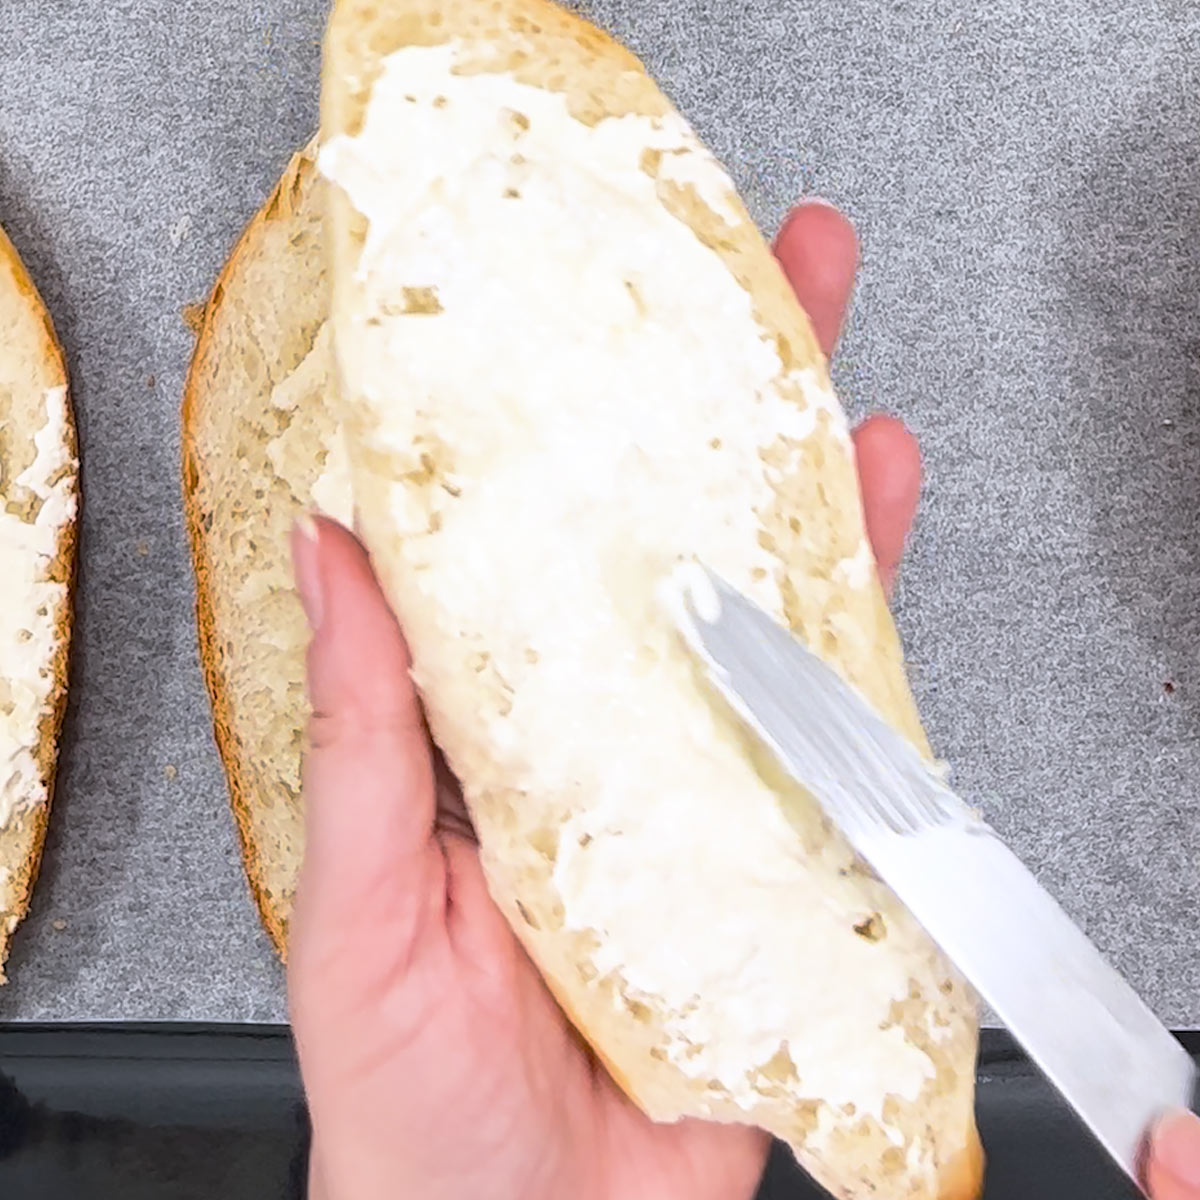 spread cream cheese over french bread